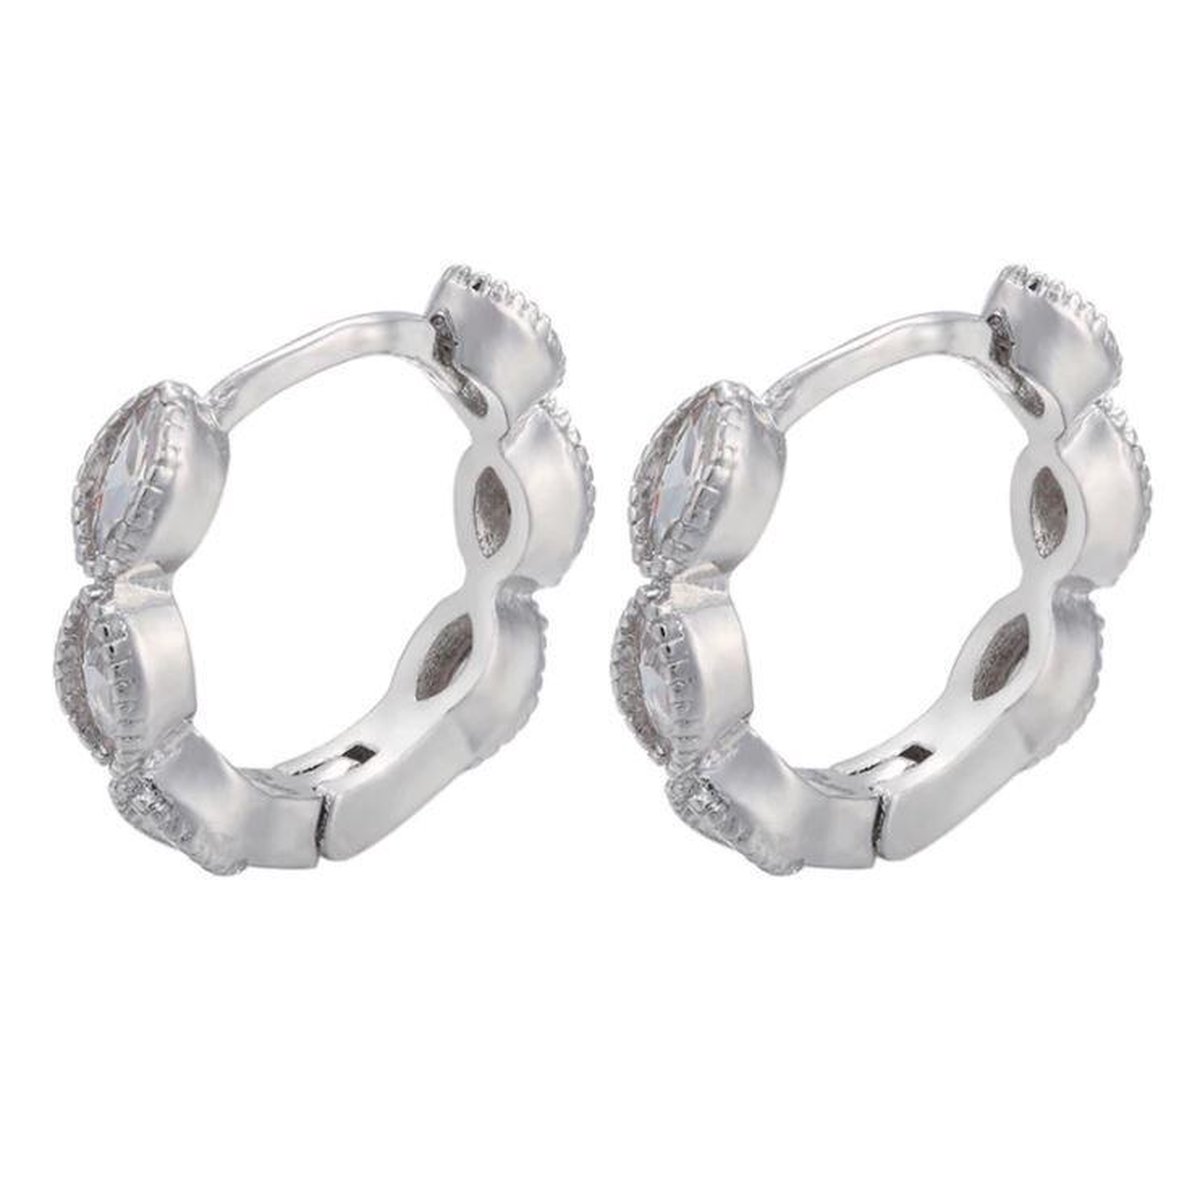 Jobo By Jet - Zilverkleurige oorbellen met diamantjes klein en groot